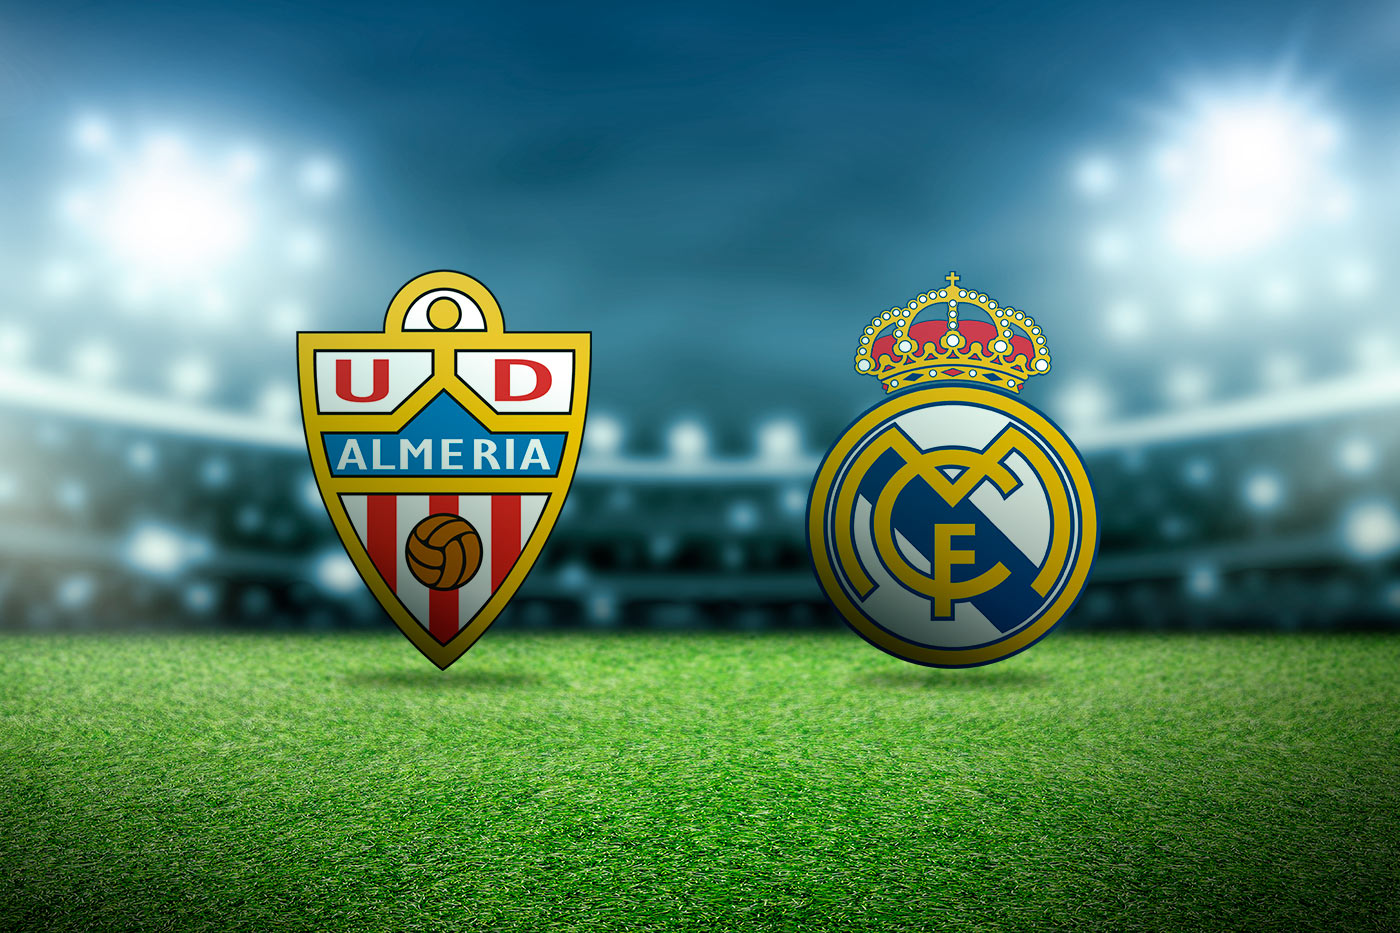 Partido entre Almeria UD y Real Madrid